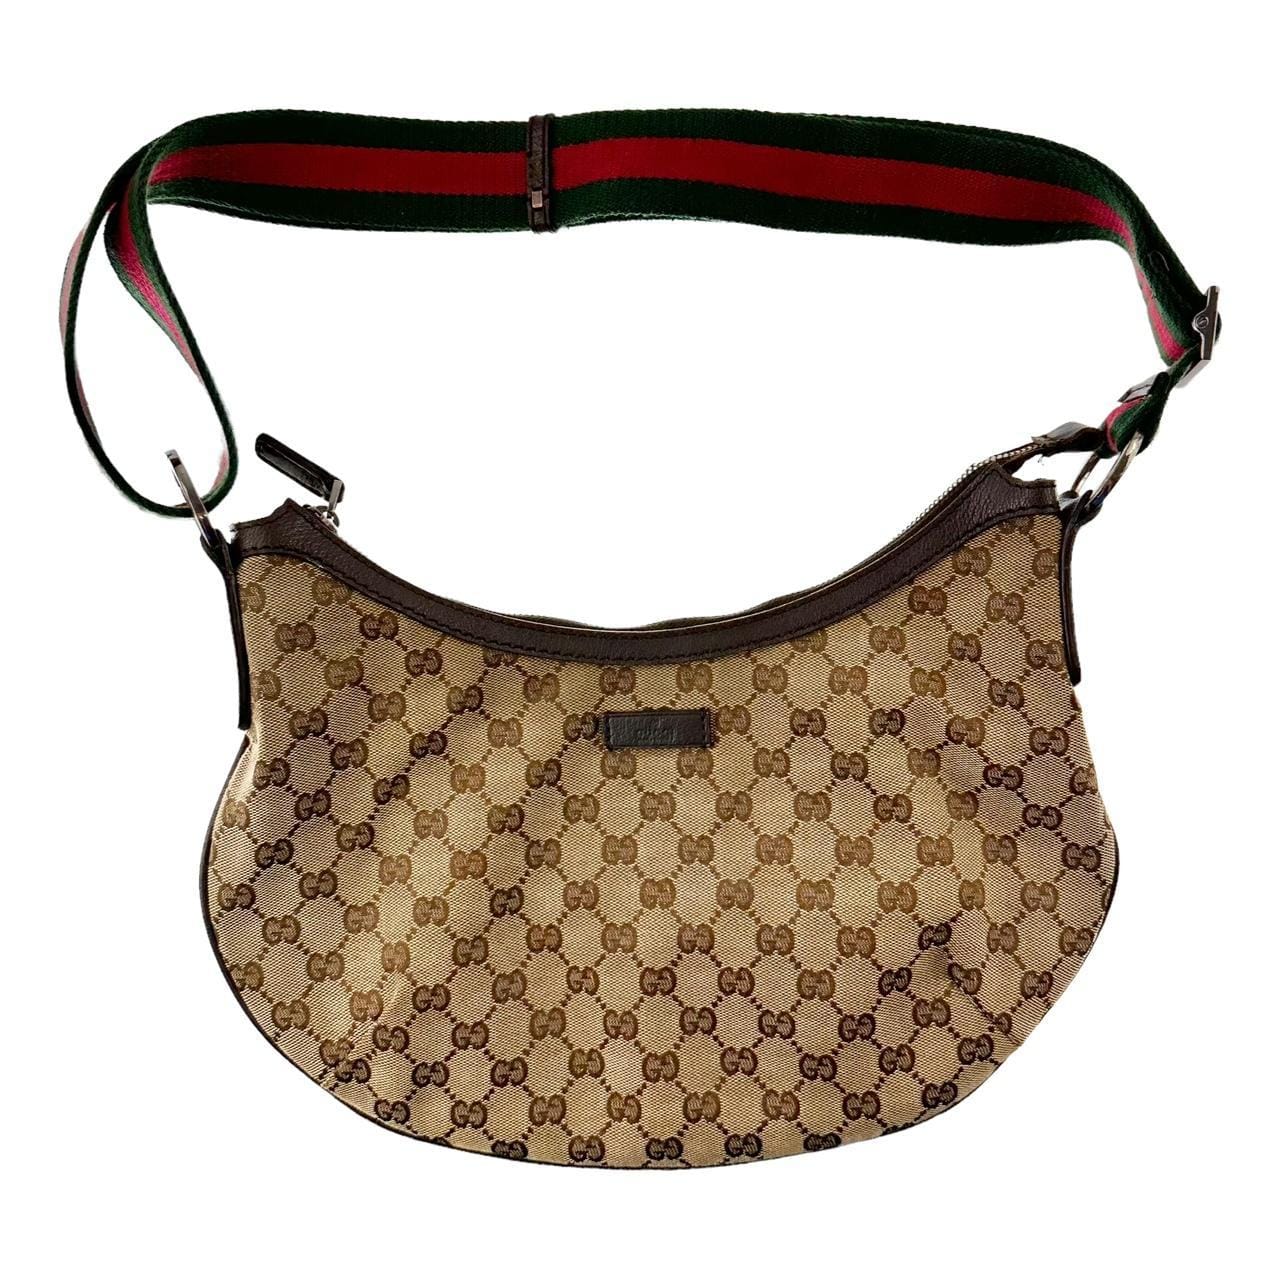 Gucci monogram shoulder bag - second wave vintage store